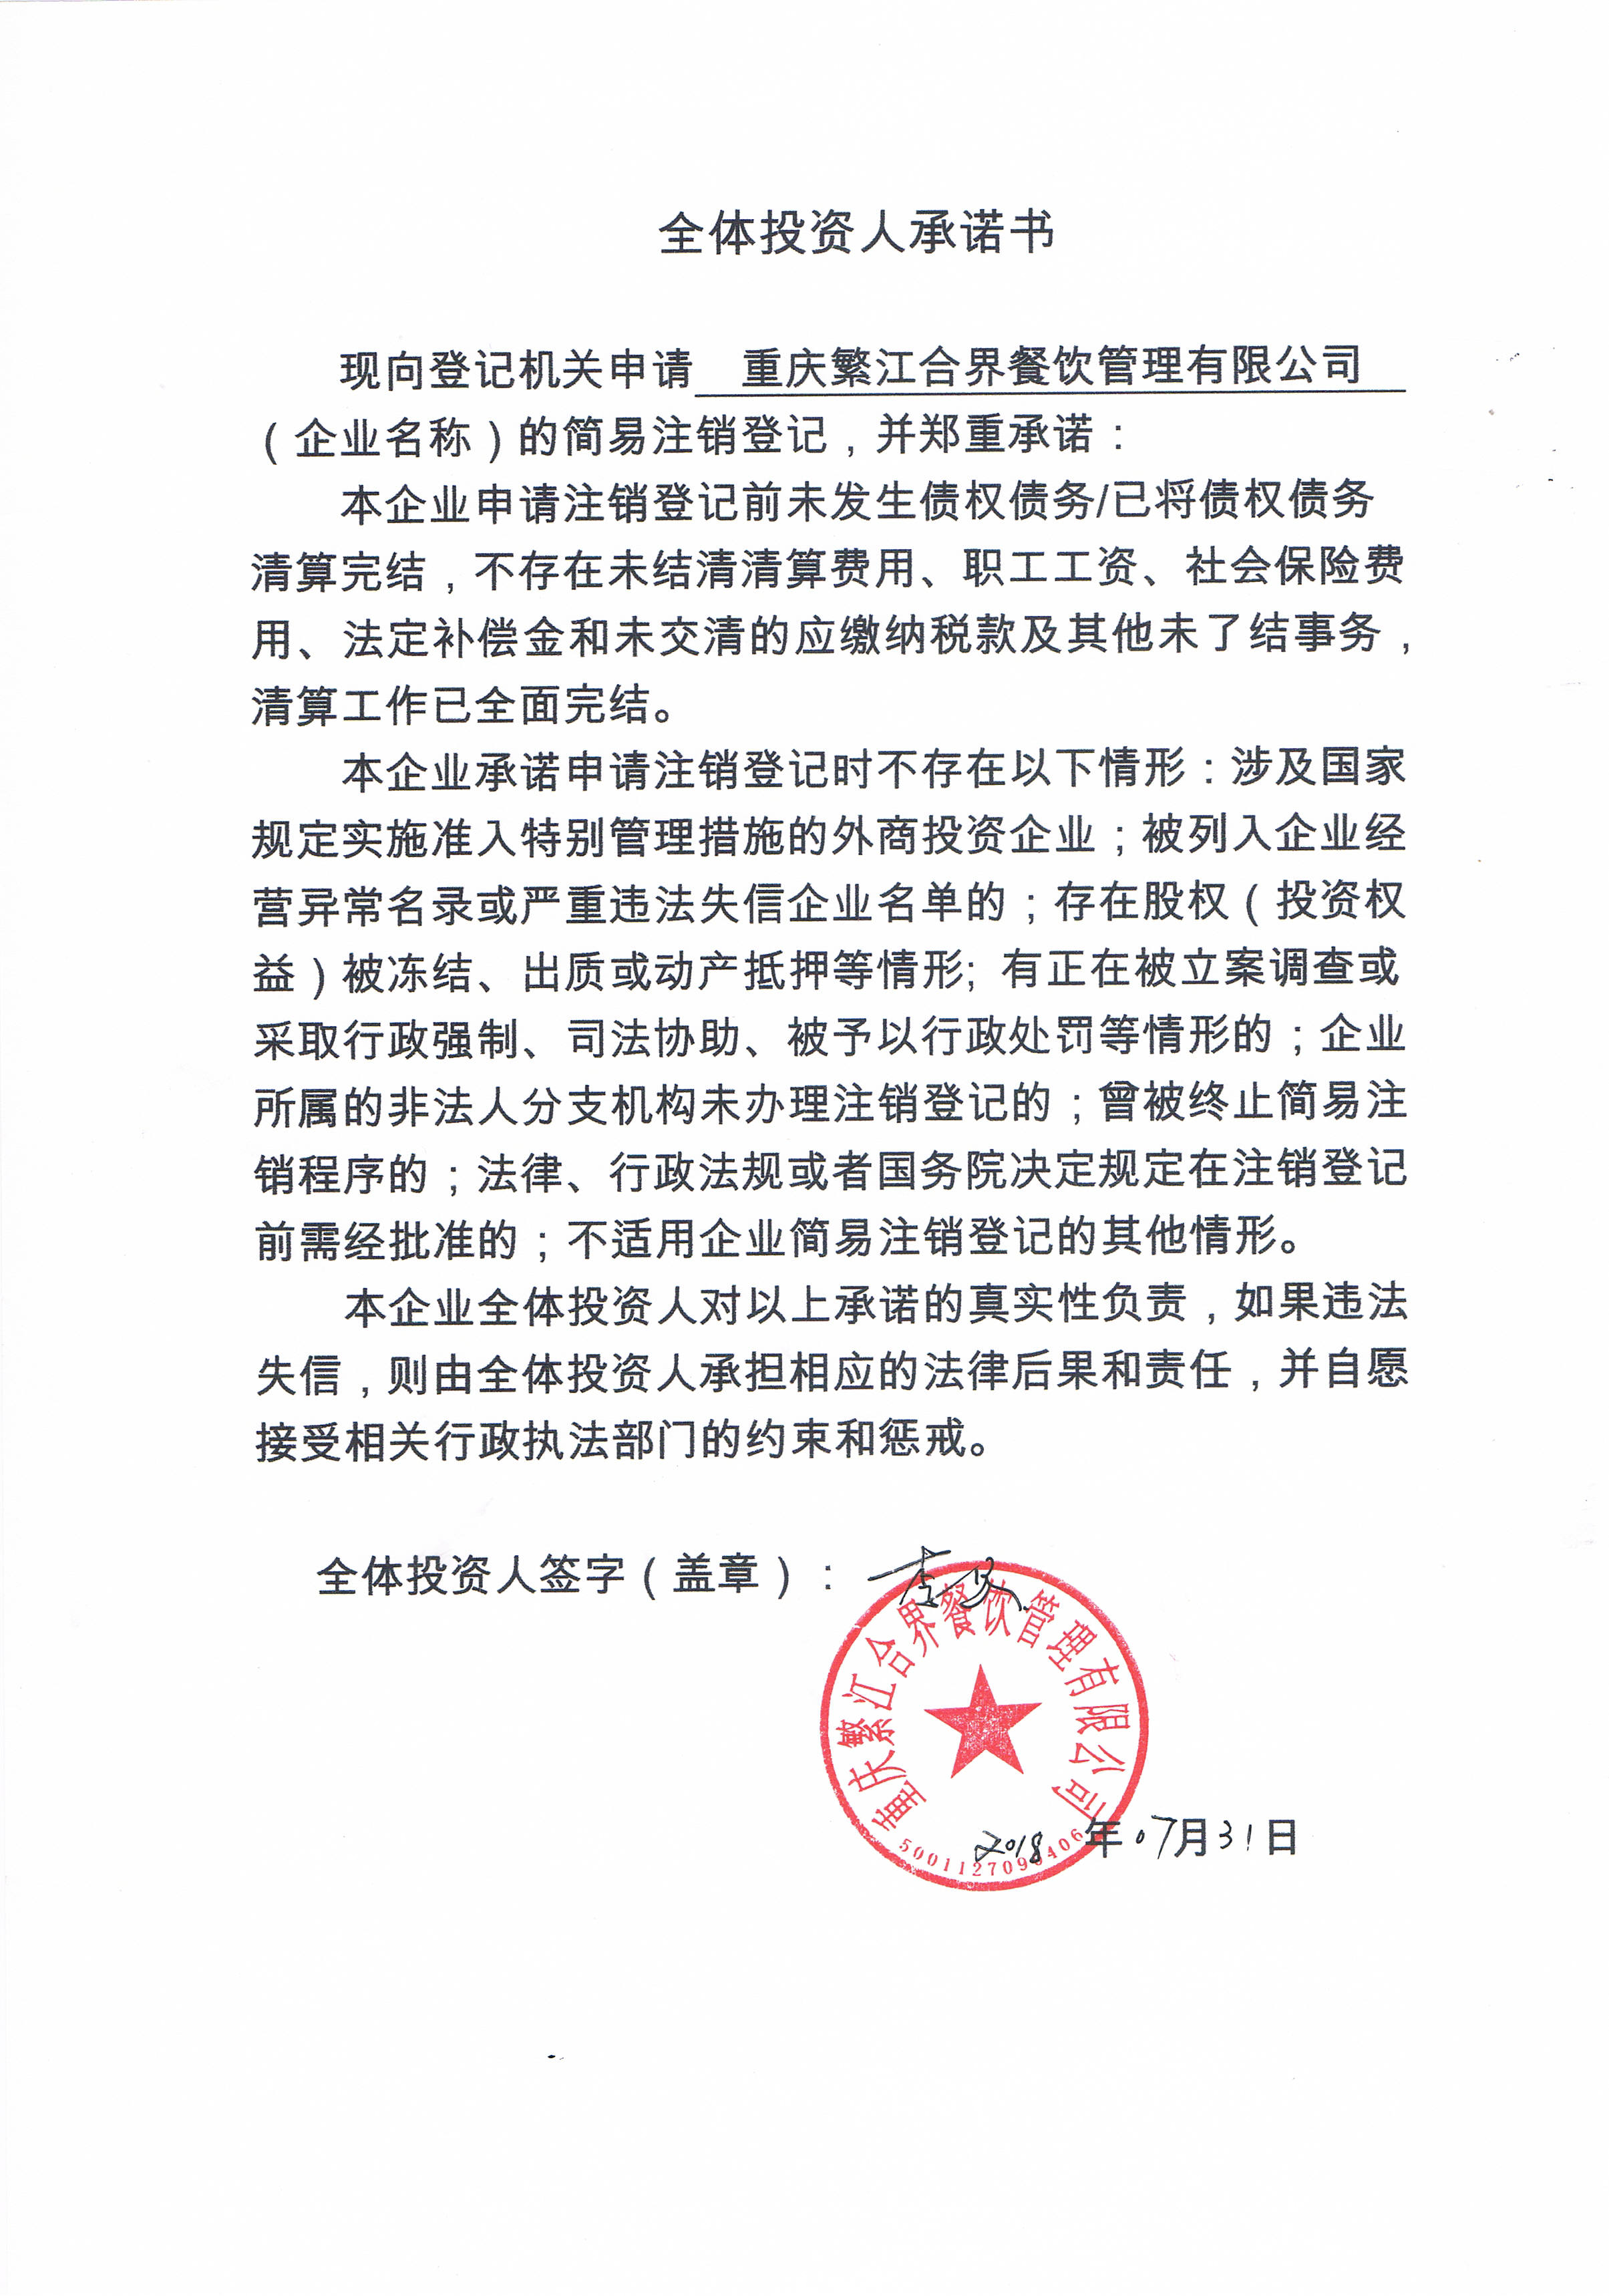 统一社会信用代码/注册号 91500112ma5ubddf47 登记机关 重庆市工商